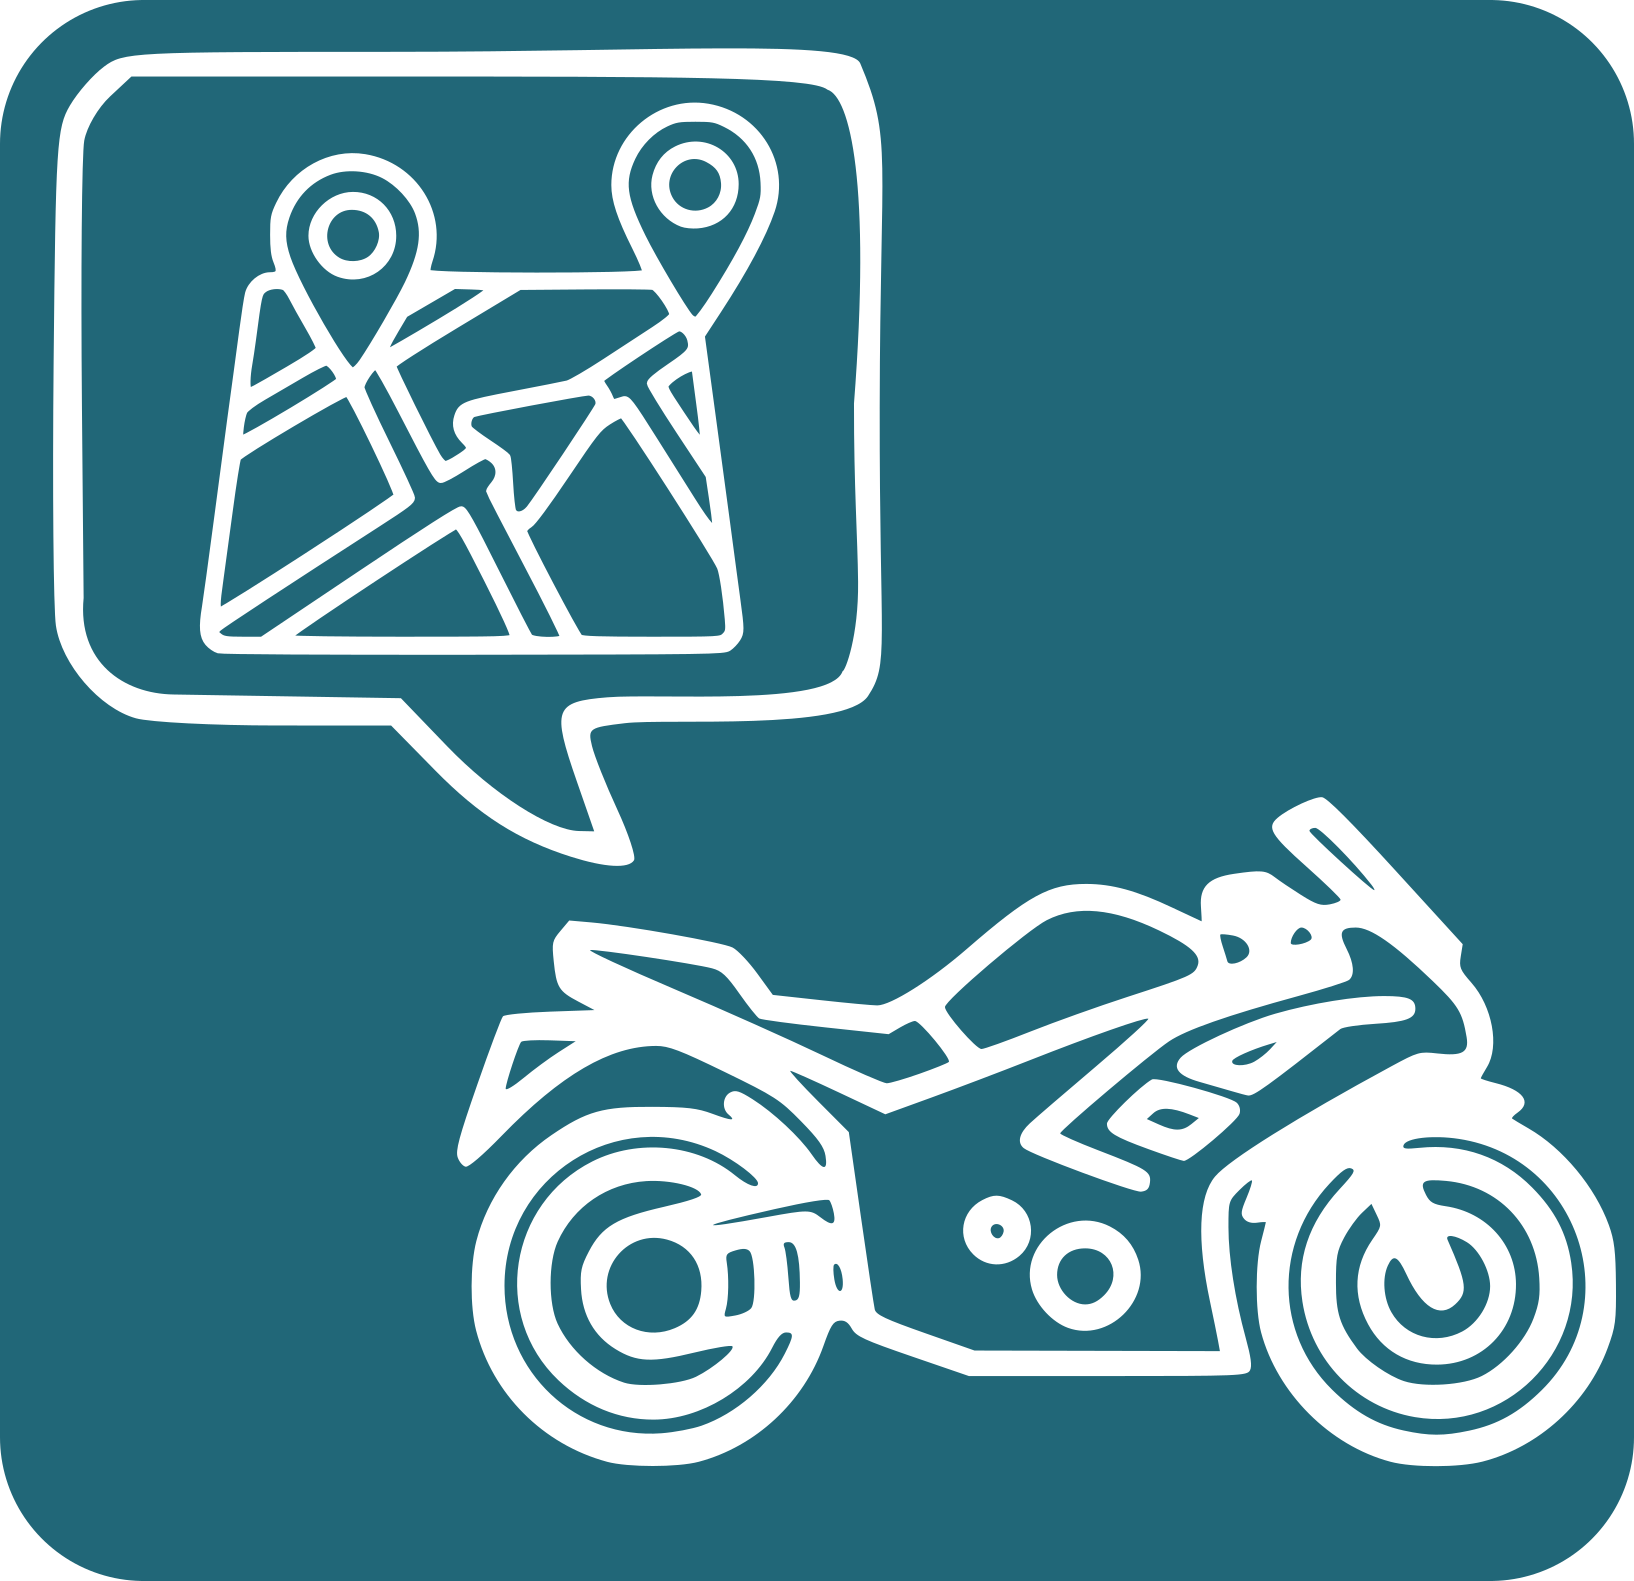 Icona d'una moto i casc